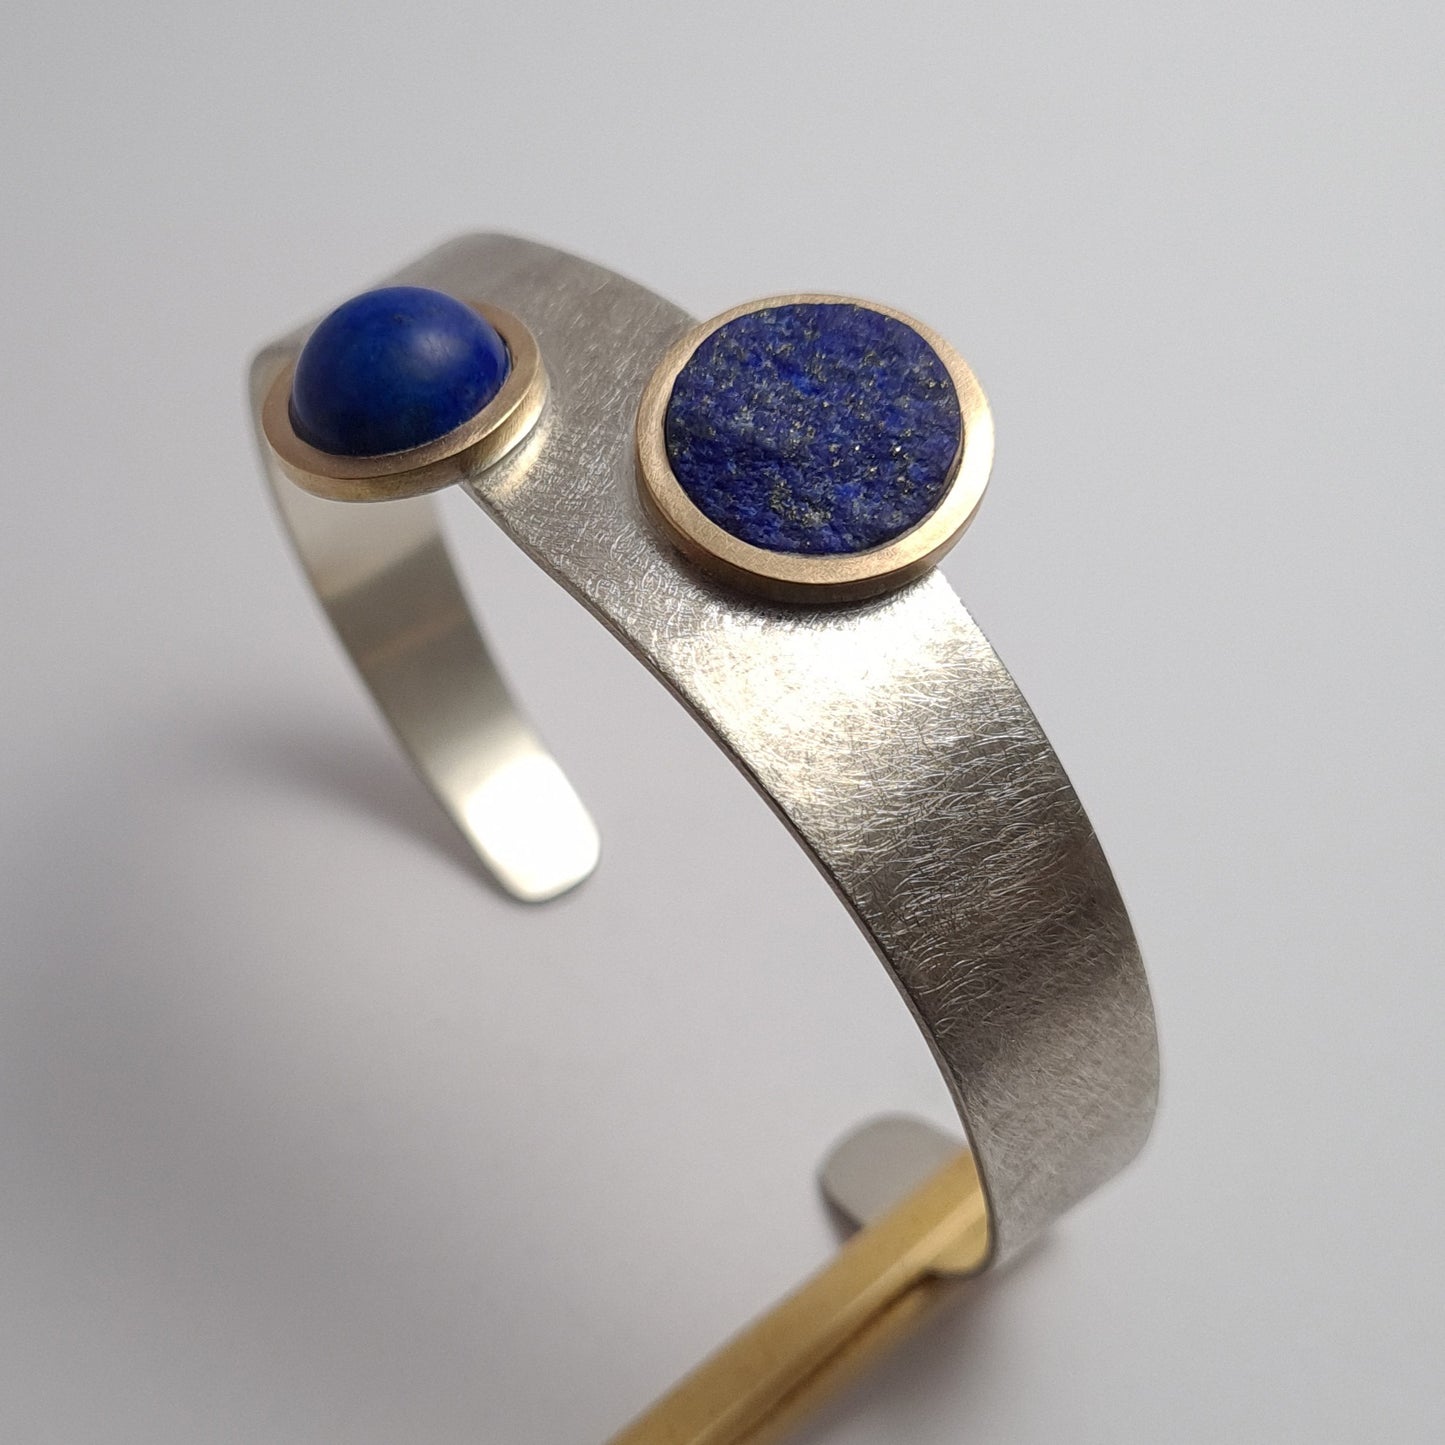 Bracelet by chance. Blue, blue.